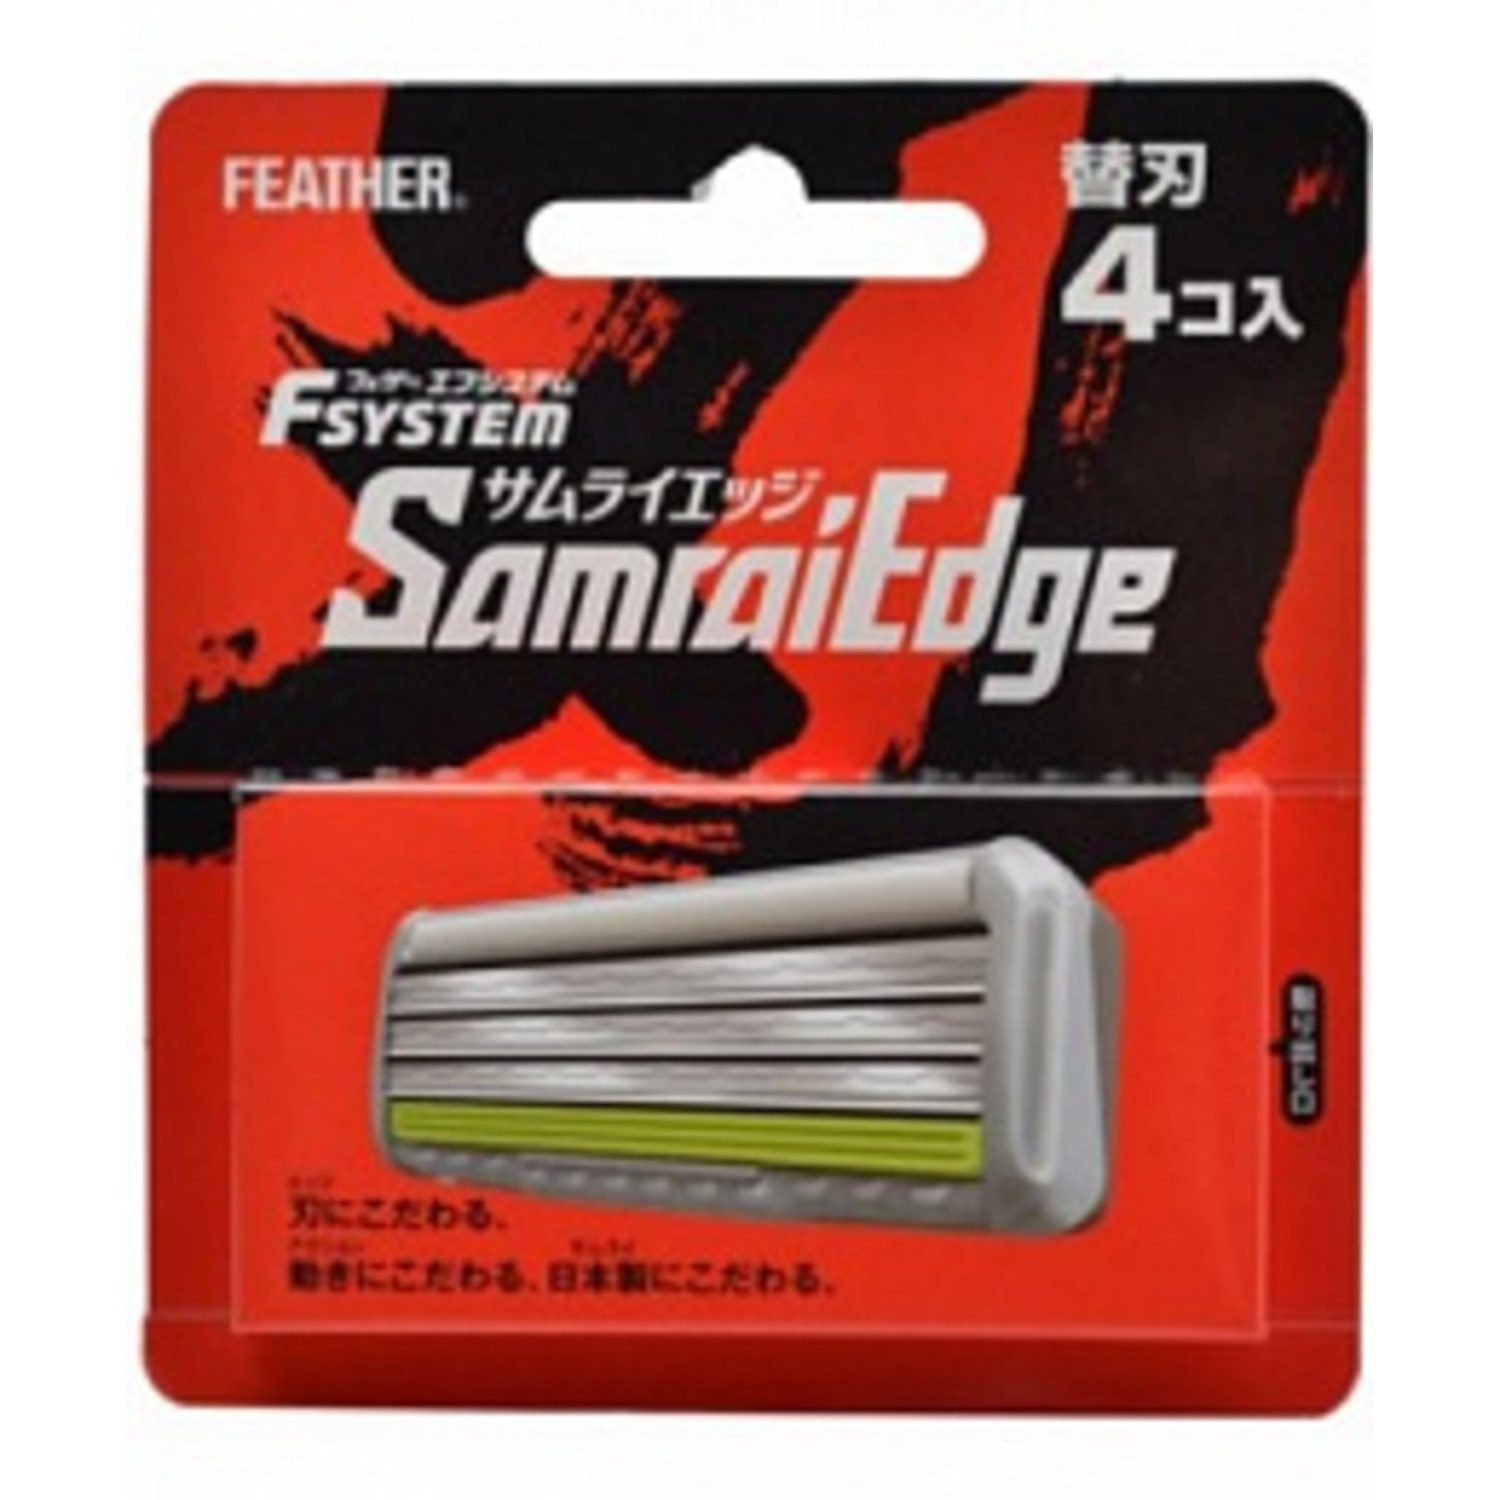 Feather F-System "Samurai Edge" Запасные кассеты с тройным лезвием для станка  4шт. / 254128